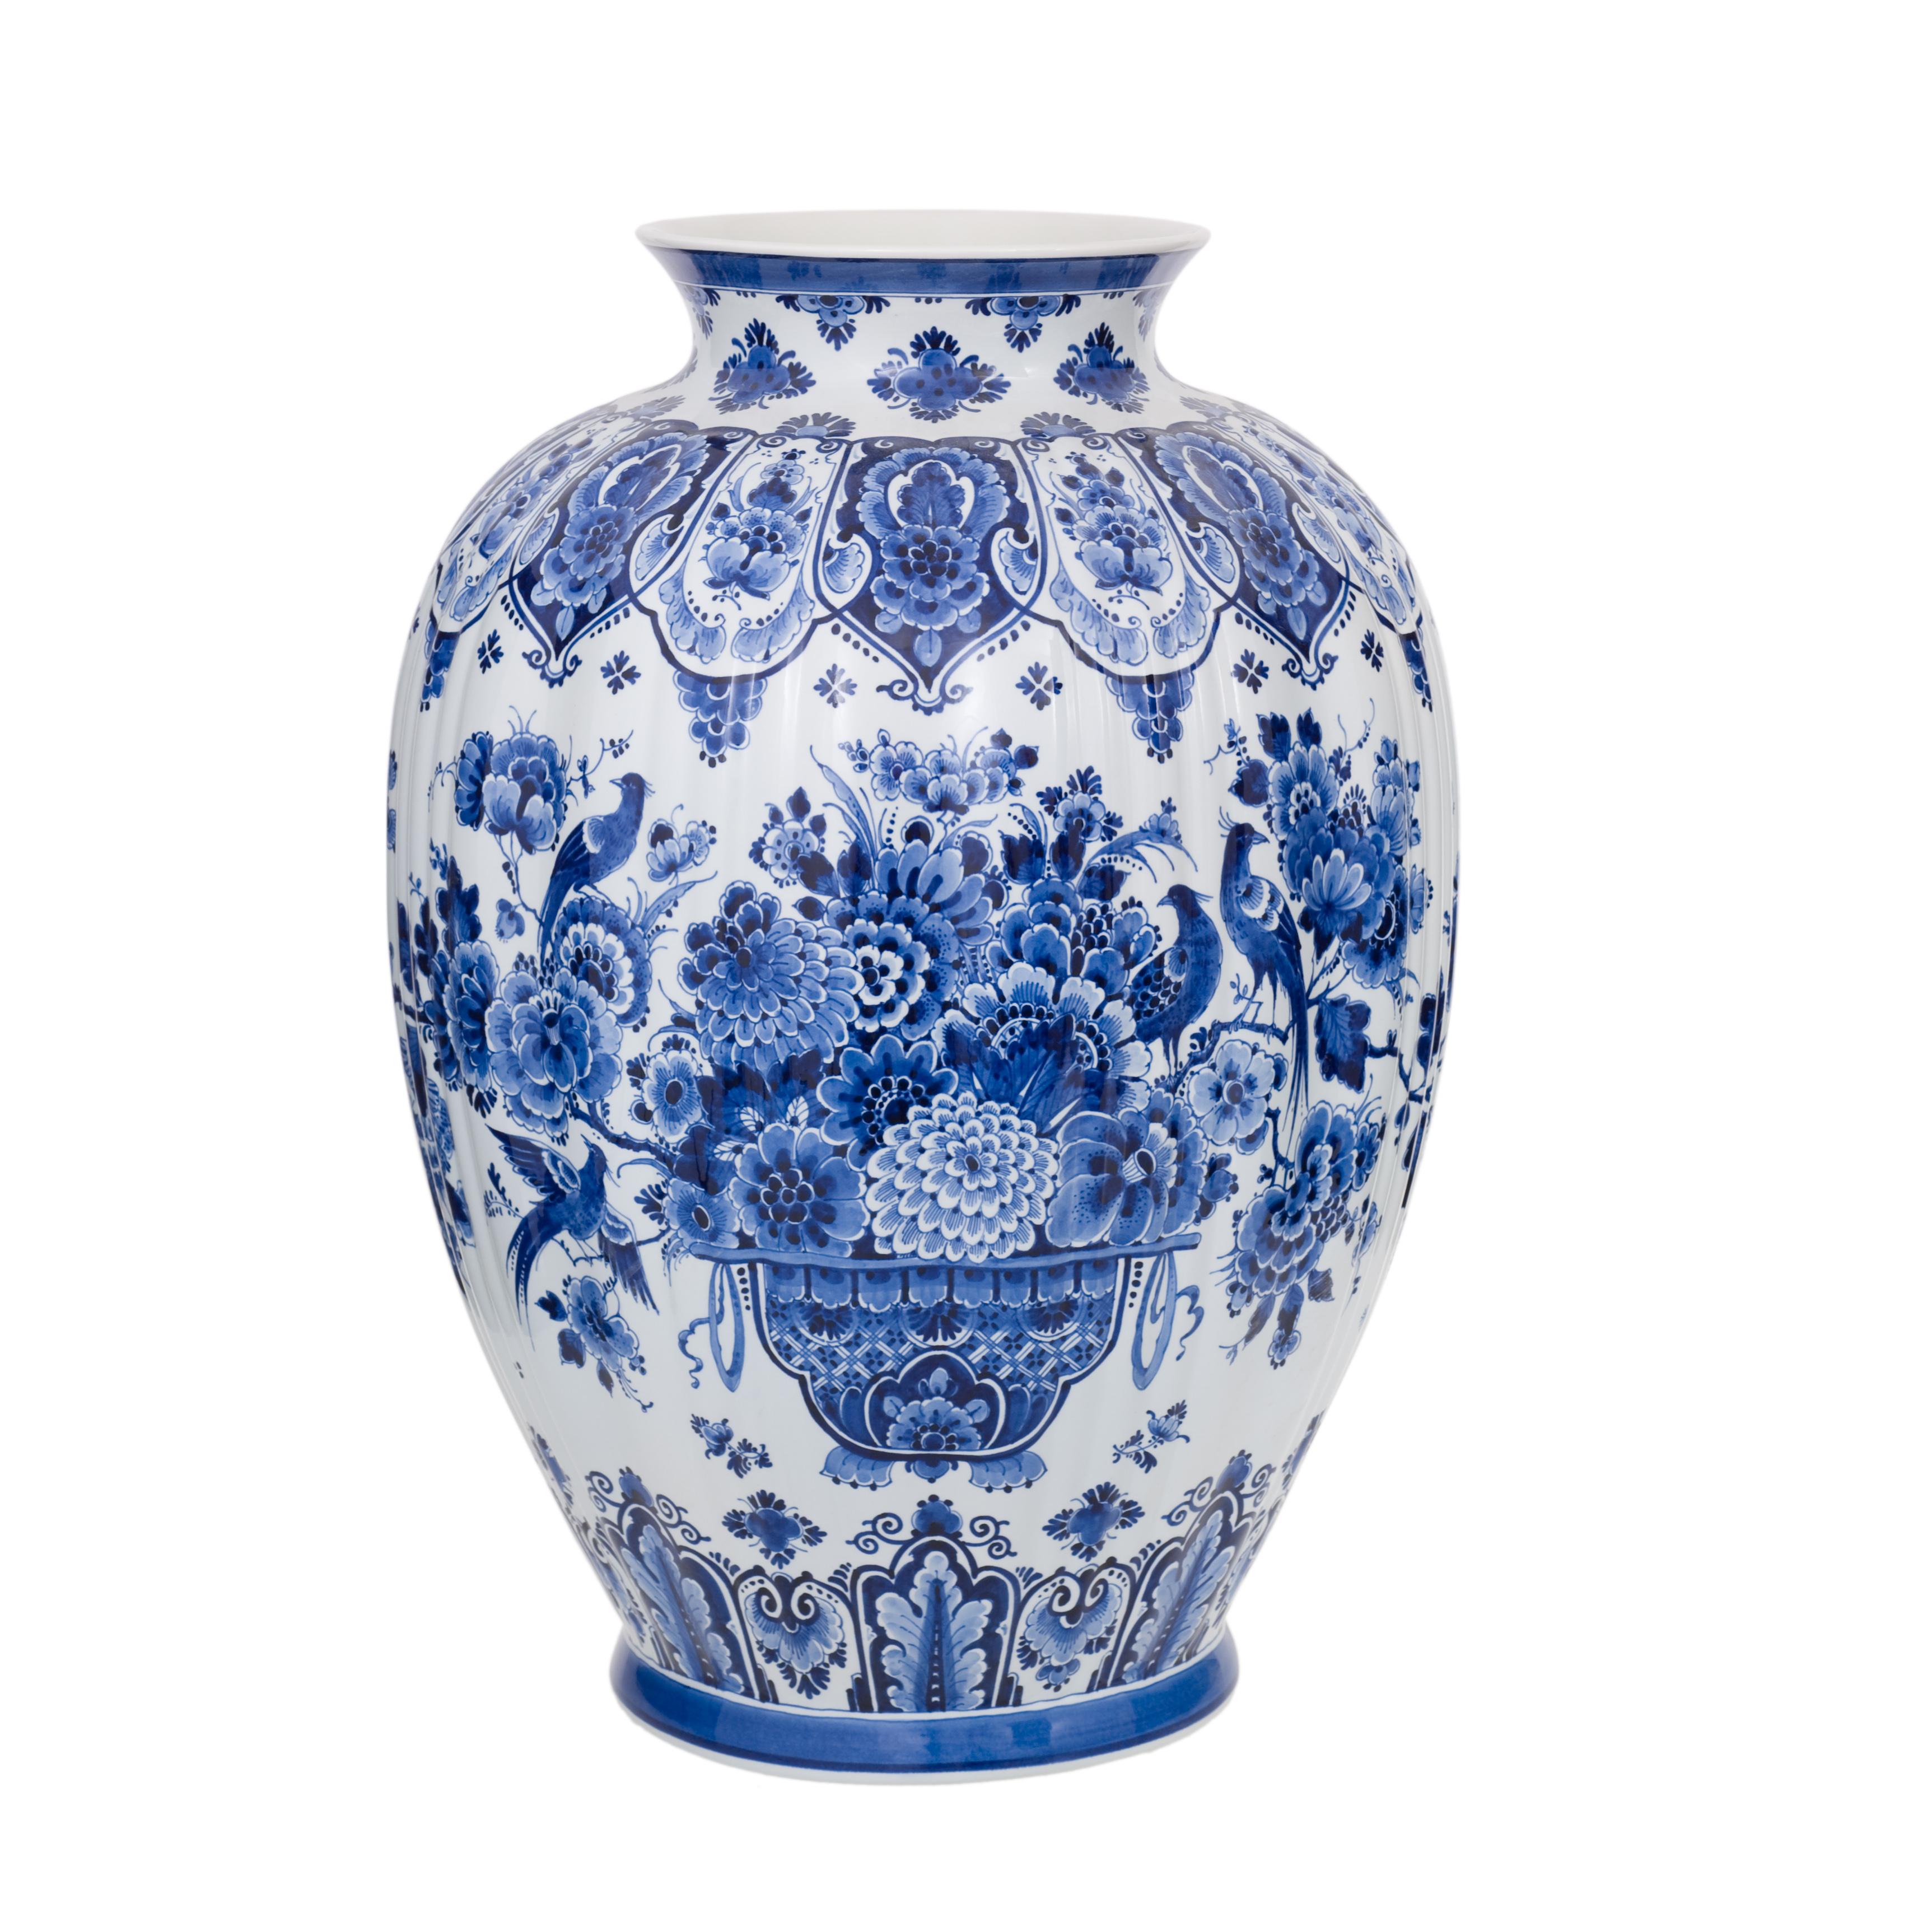 Exclusivement fabriqué à la main dans l'atelier de Royal Delft aux Pays-Bas. Ce vase est peint à la main par l'un des maîtres peintres de Royal Delft. Le vase est richement décoré d'un panier floral et d'un motif d'oiseaux dans la couleur bleue de